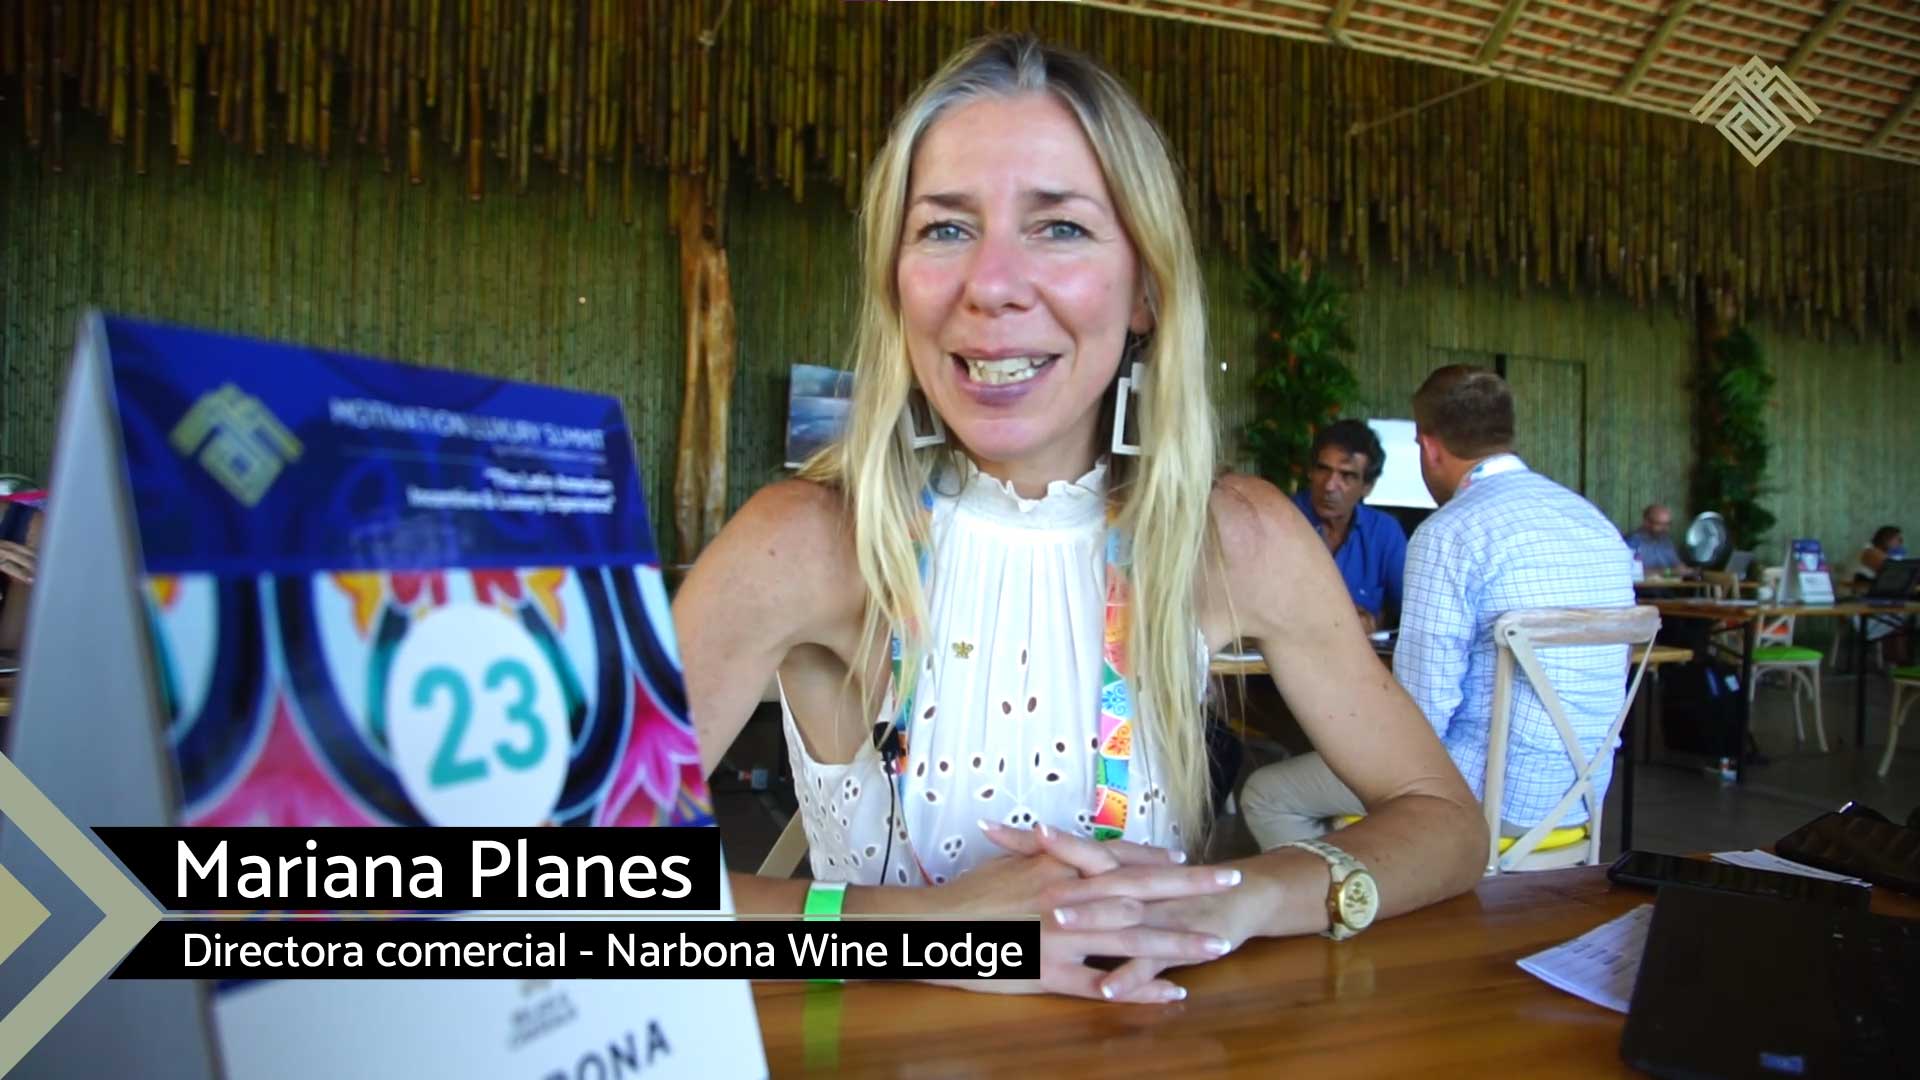 Mariana Planes - Directora comercial - Narbona Wine Lodge - Punta del Este, Uruguay